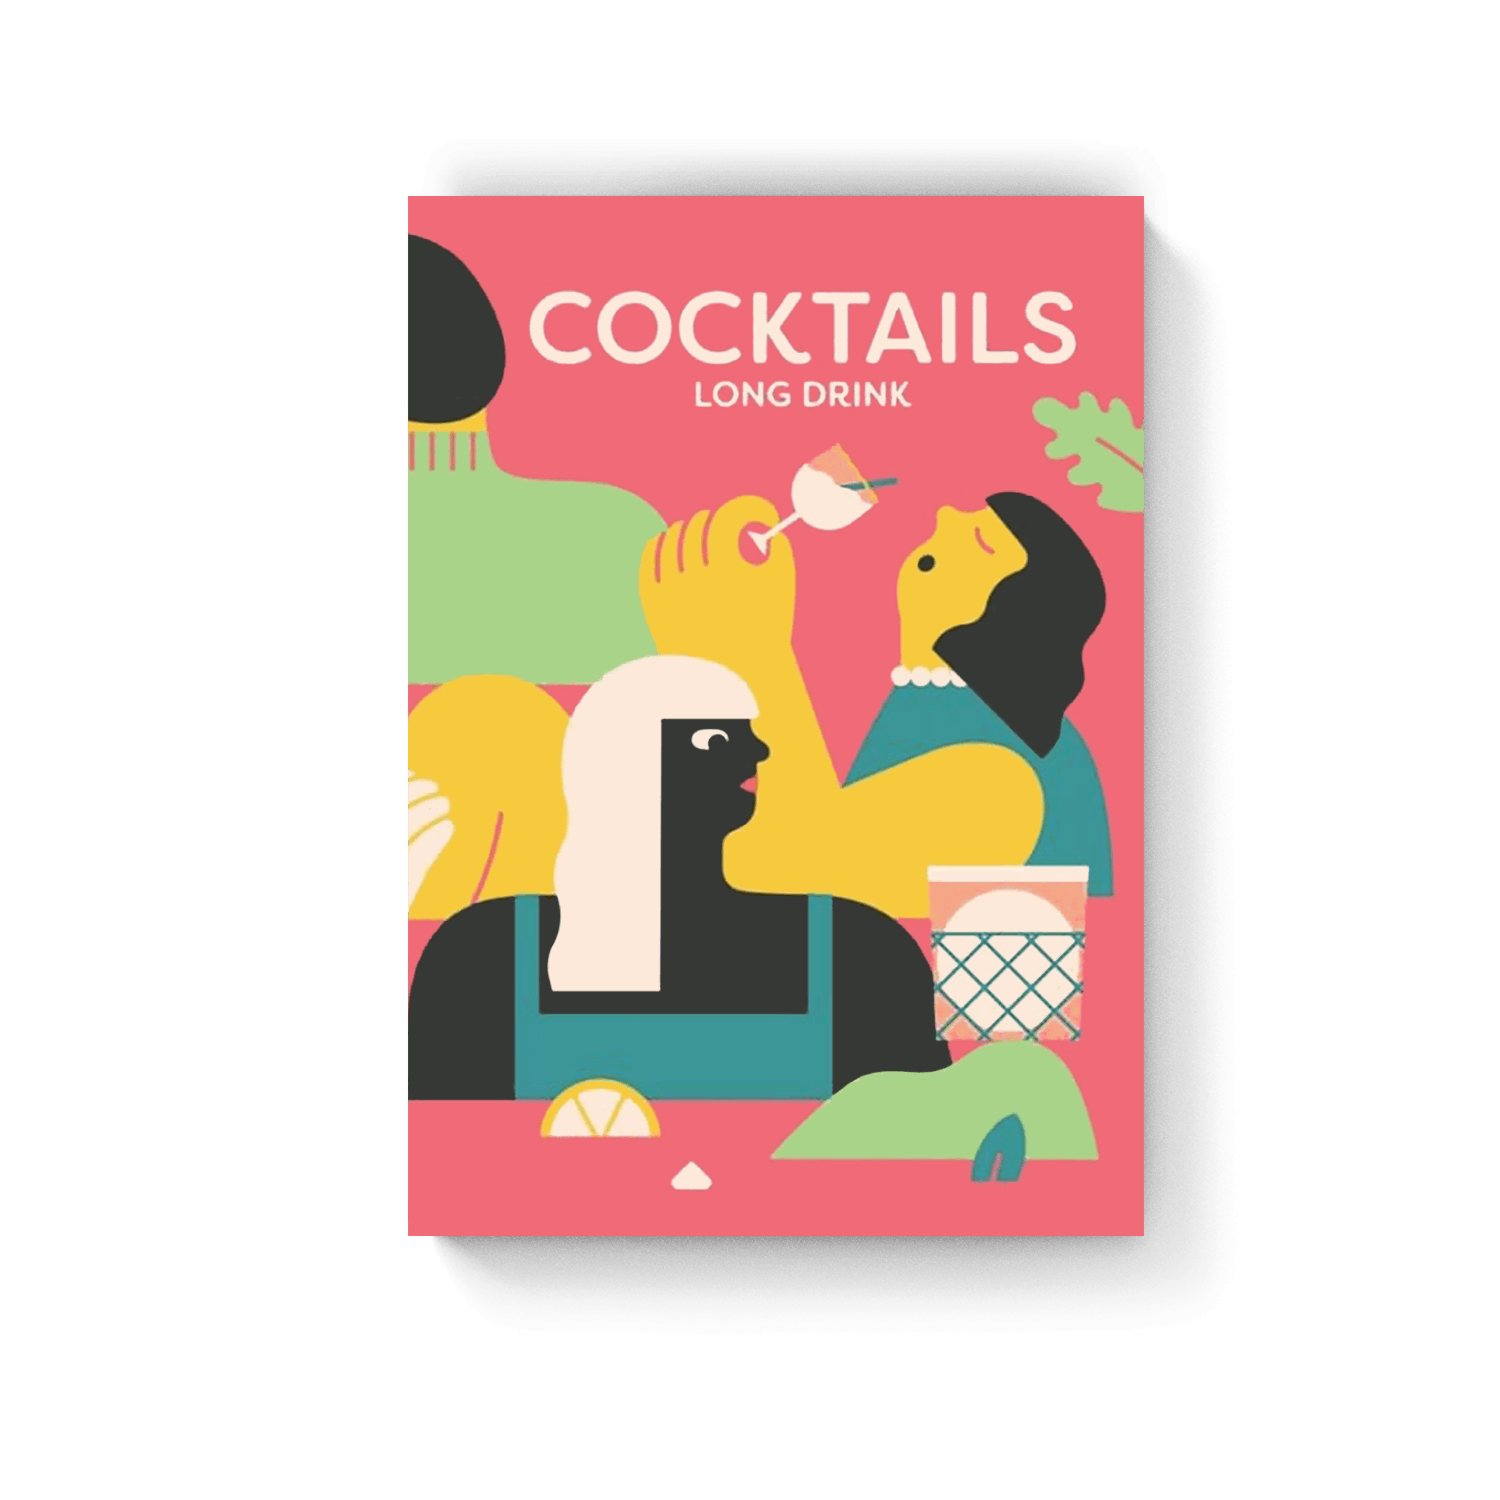 Cocktails - Long drink